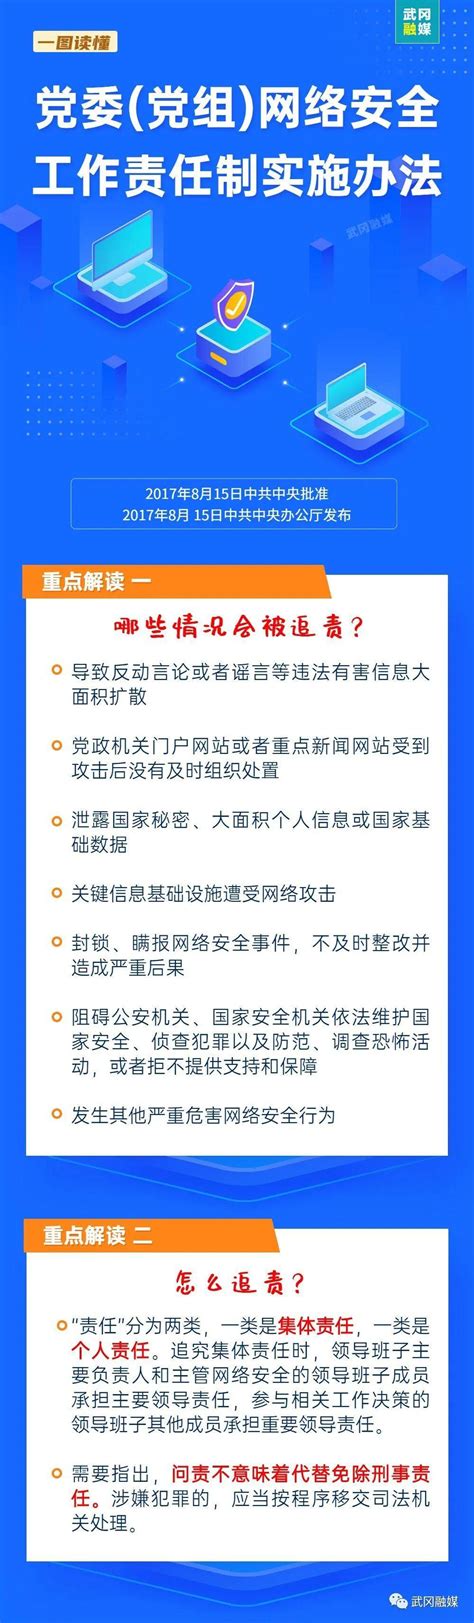 一图读懂 | 上海市政府质量奖管理办法-中国质量新闻网